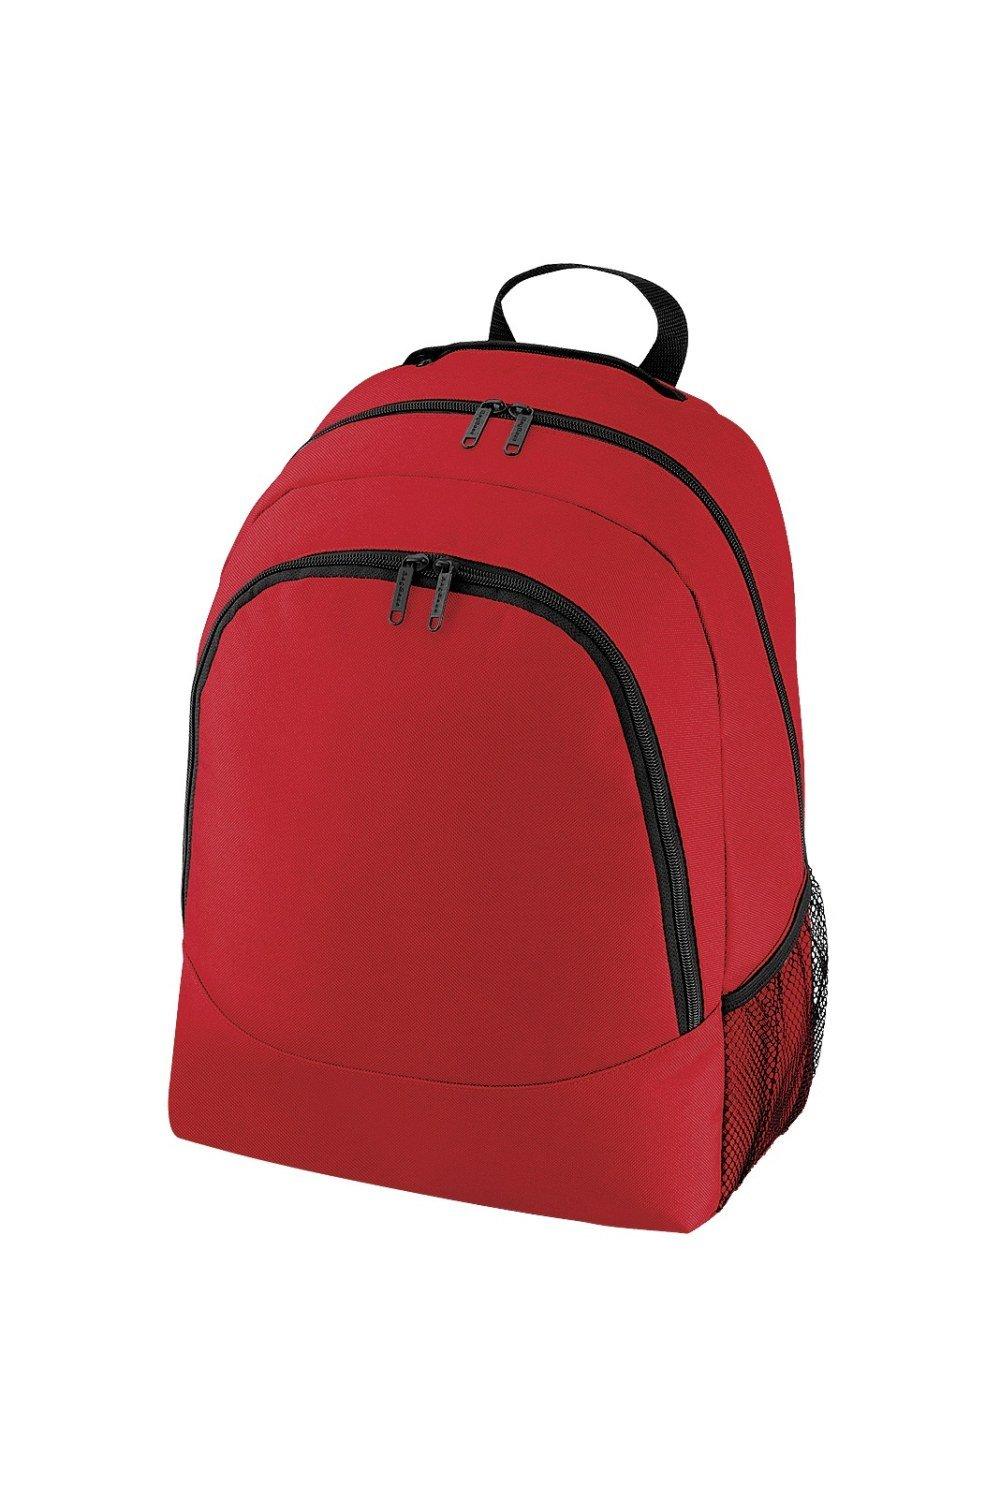 Универсальный многоцелевой рюкзак/рюкзак/сумка (18 литров) Bagbase, красный чехол задняя панель накладка бампер mypads mp3 для huawei honor 6 plus pe ul00 tl20 tl10 cl00 75 7 противоударный